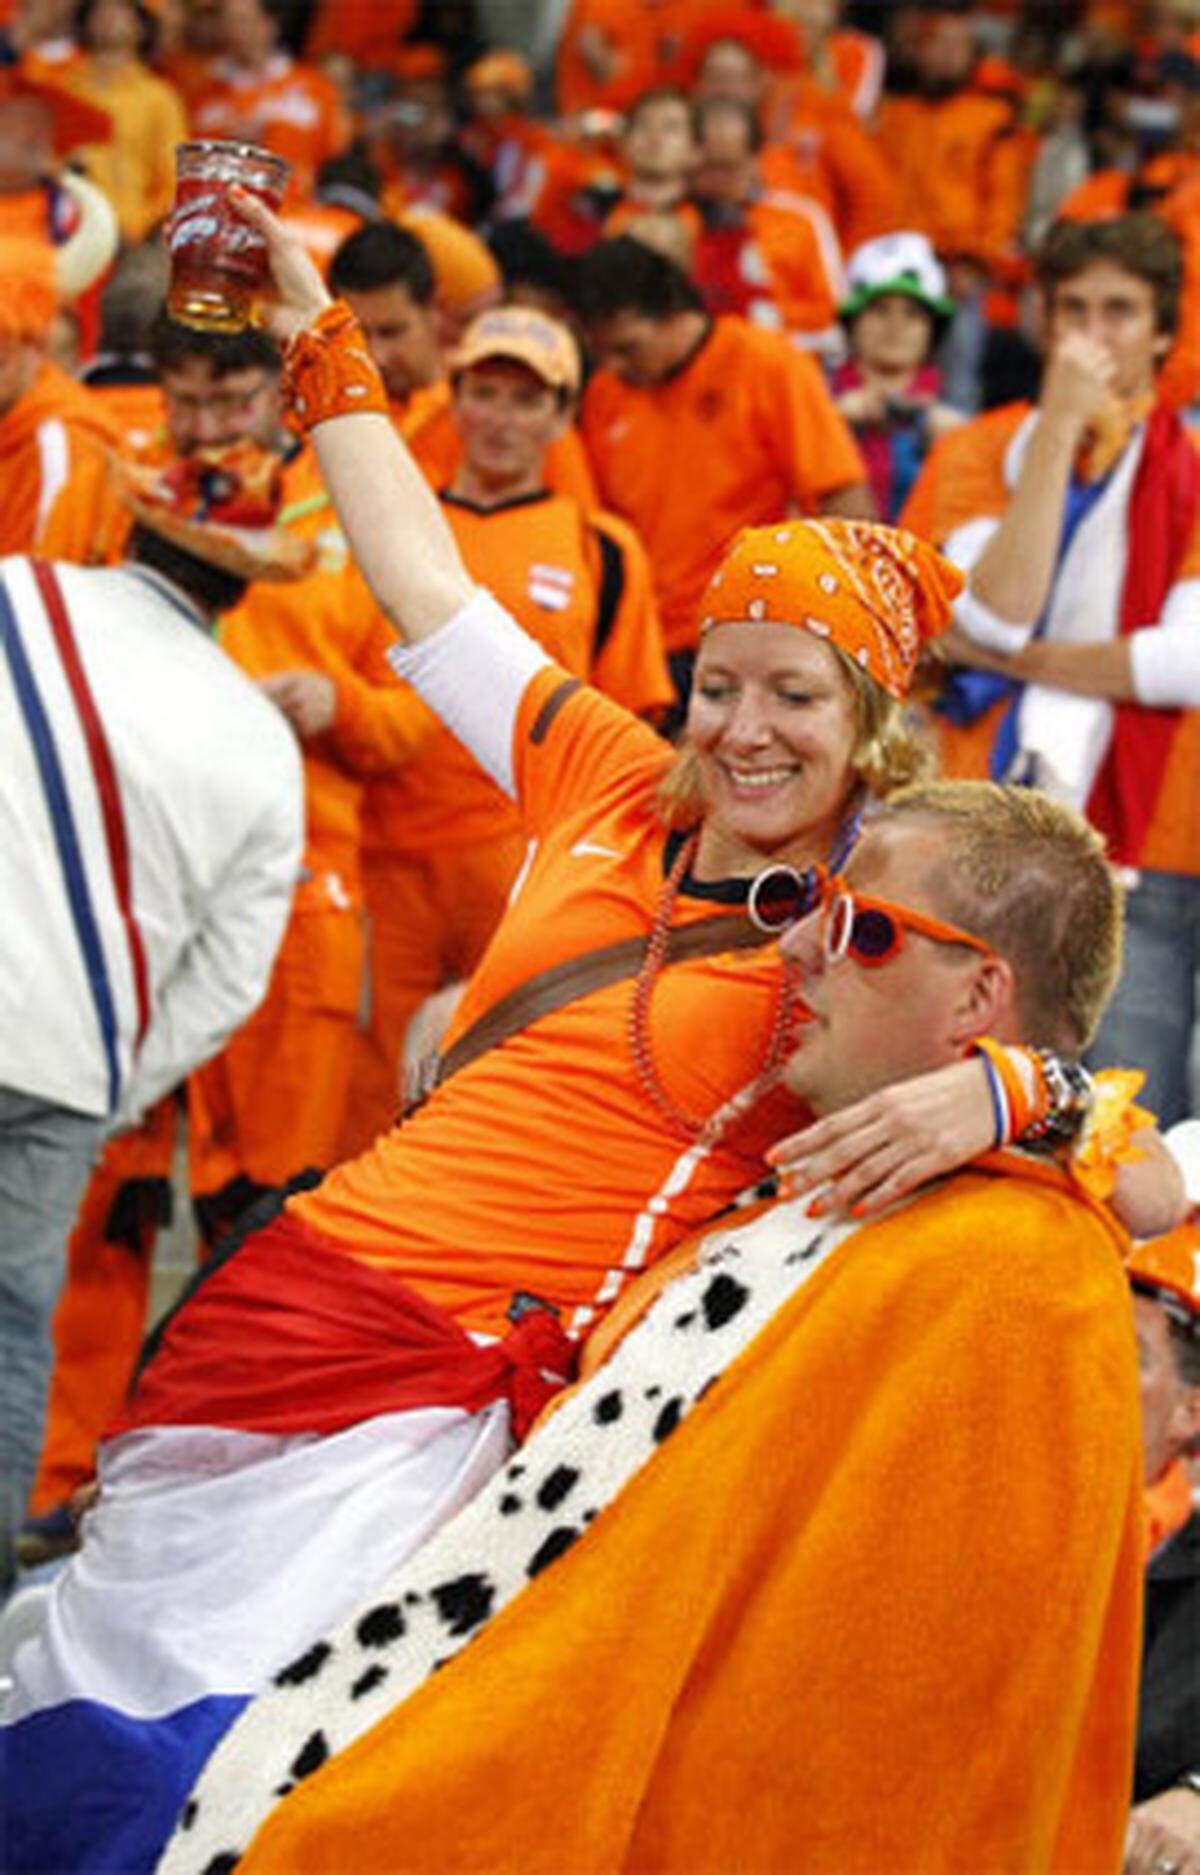 "Nederland Wereldkampion!", lautete einer der beliebtesten Sprechchöre der unvermeidlichen Bier-Polonaisen: "Niederlande Weltmeister".